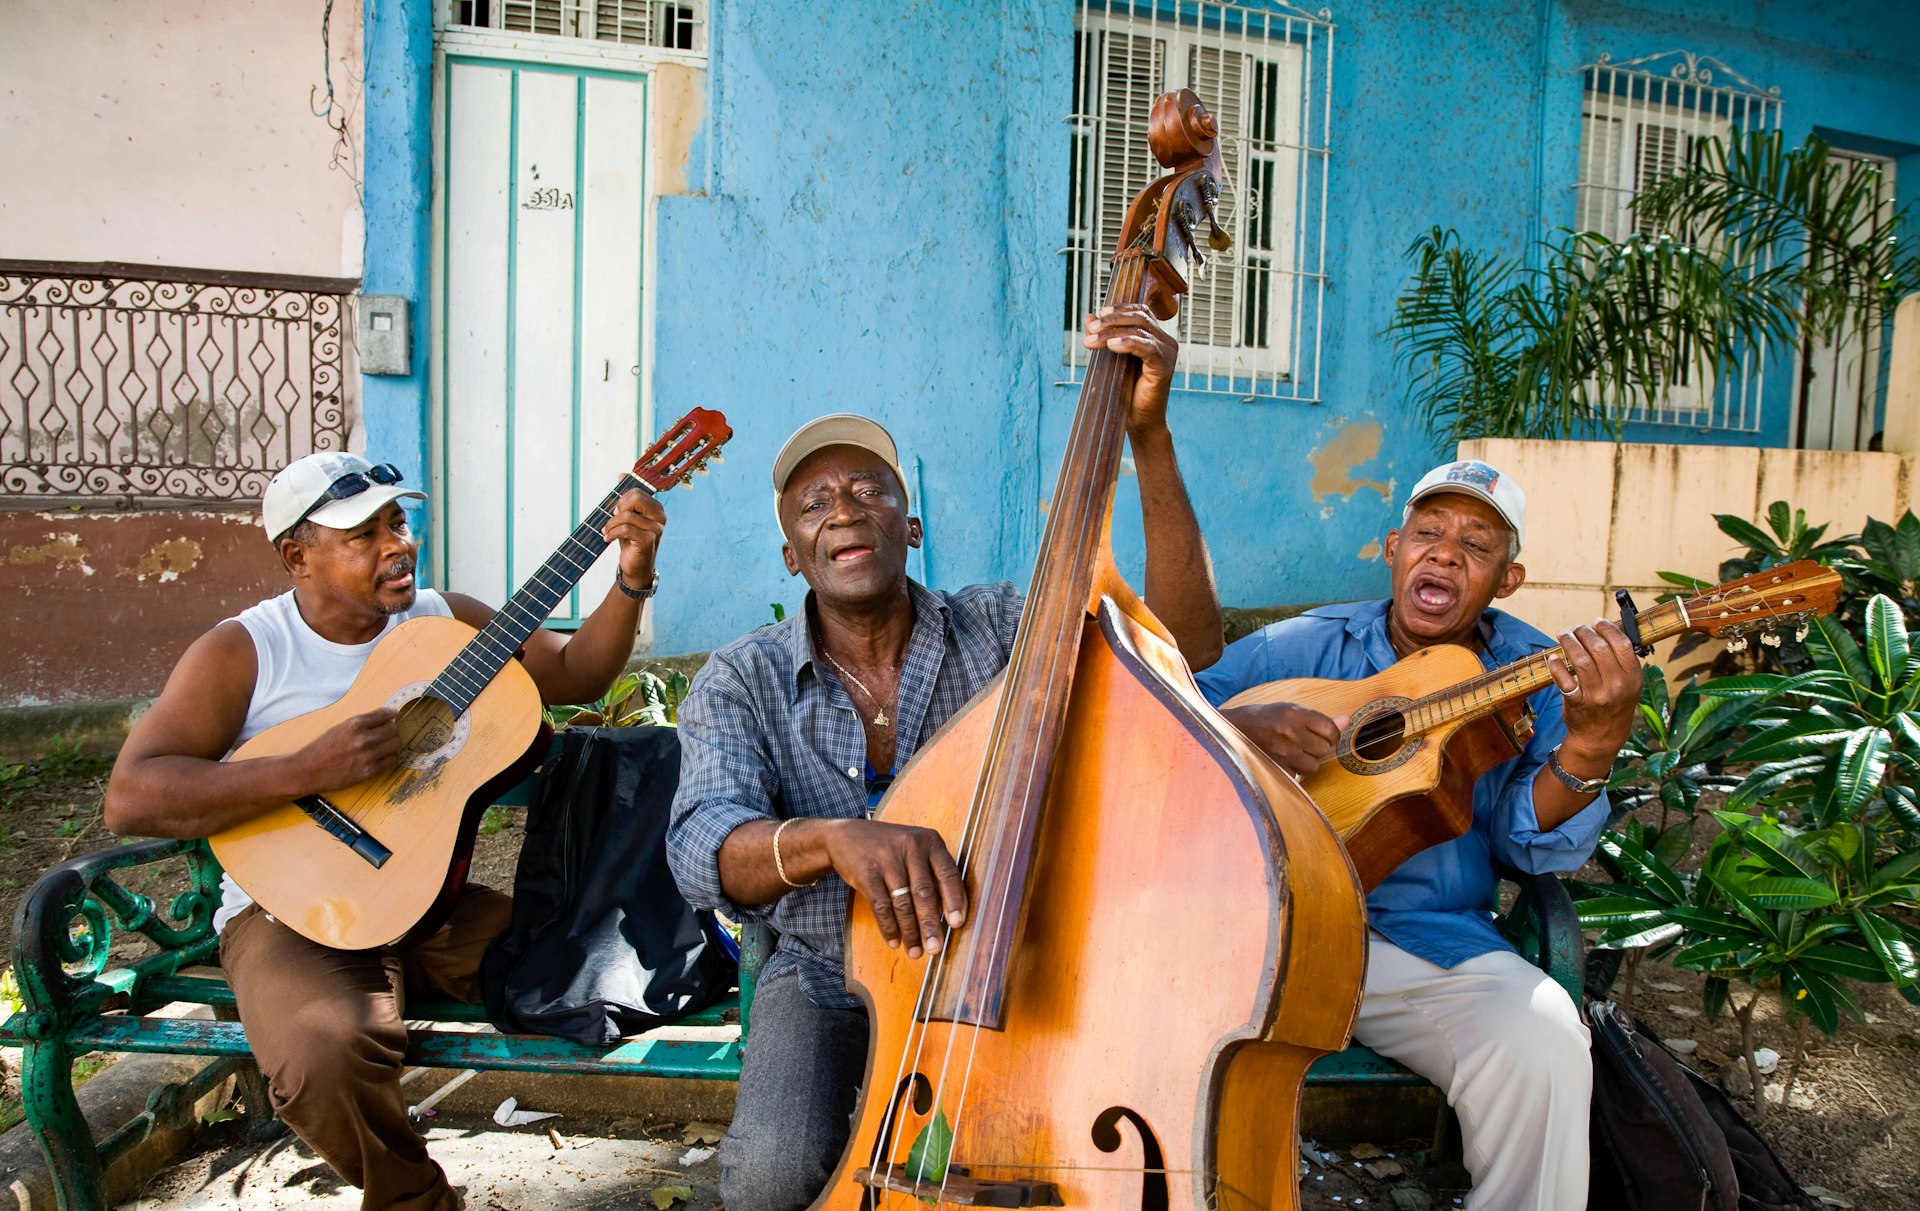 Street musicians in Santiago de Cuba, Cuba